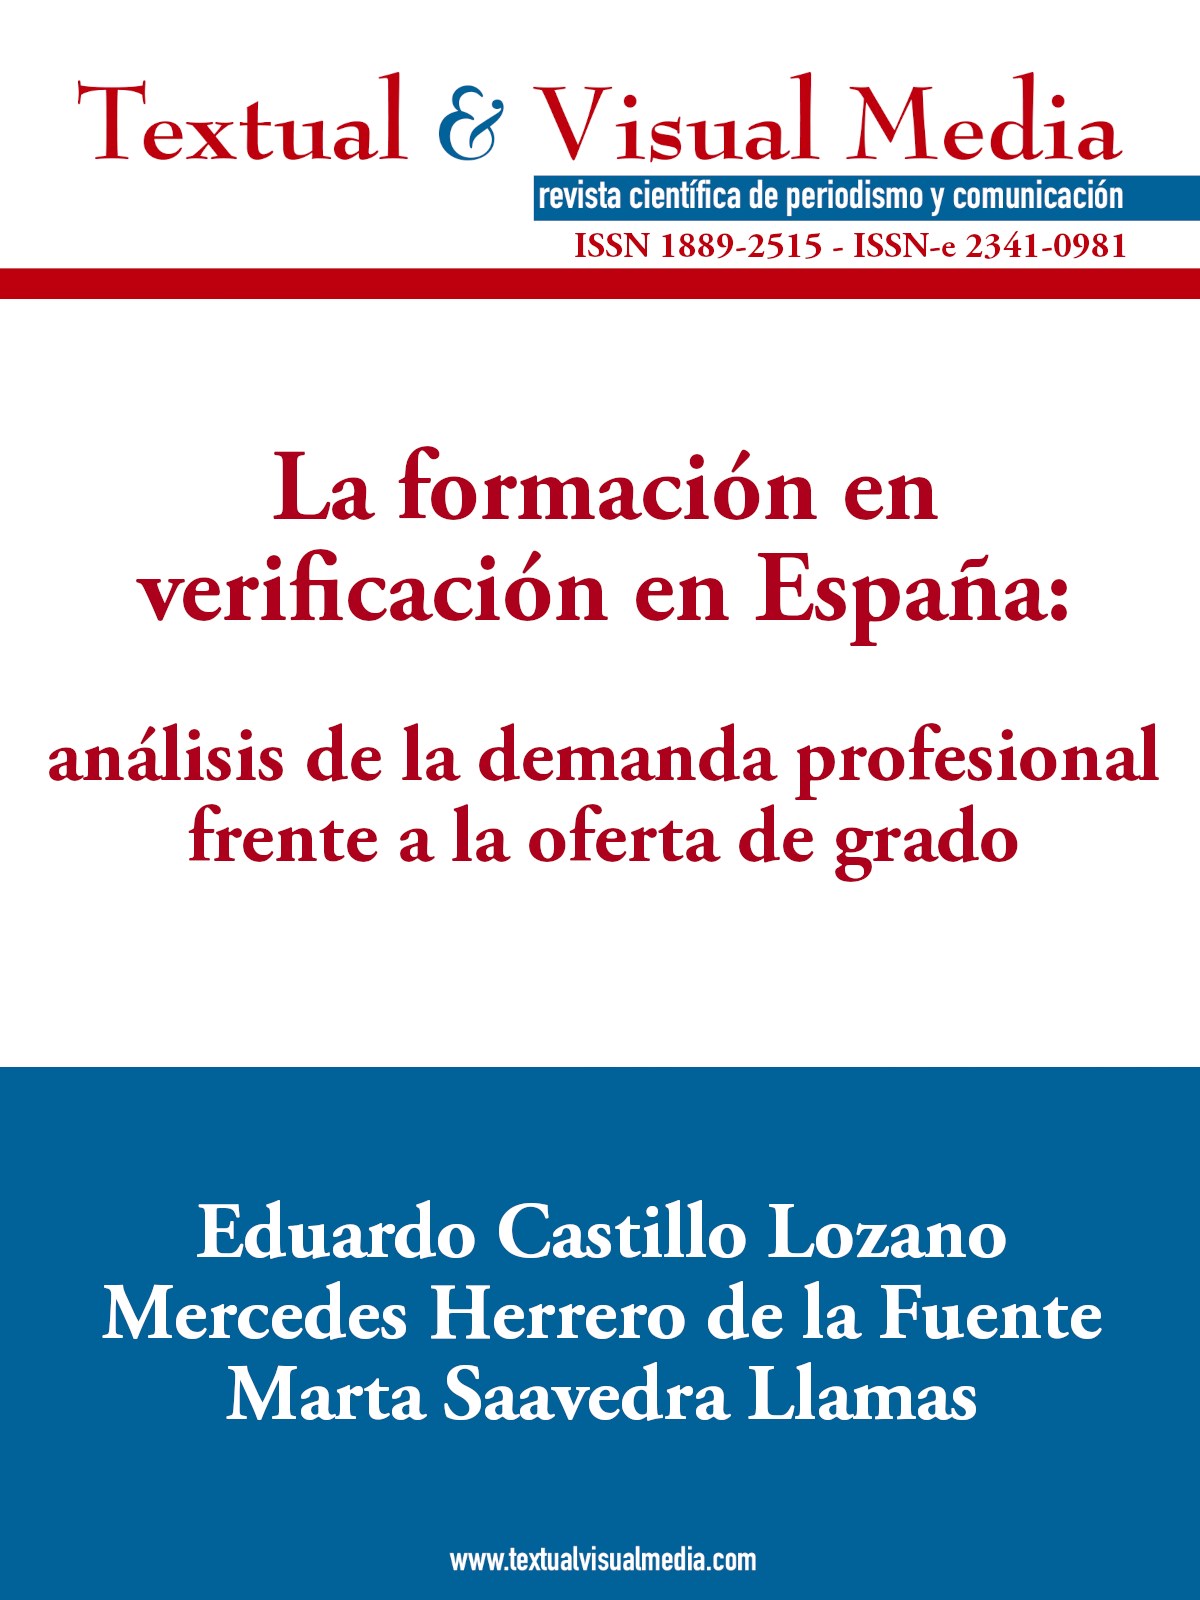 La formación en verificación en España: análisis de la demanda profesional frente a la oferta de grado